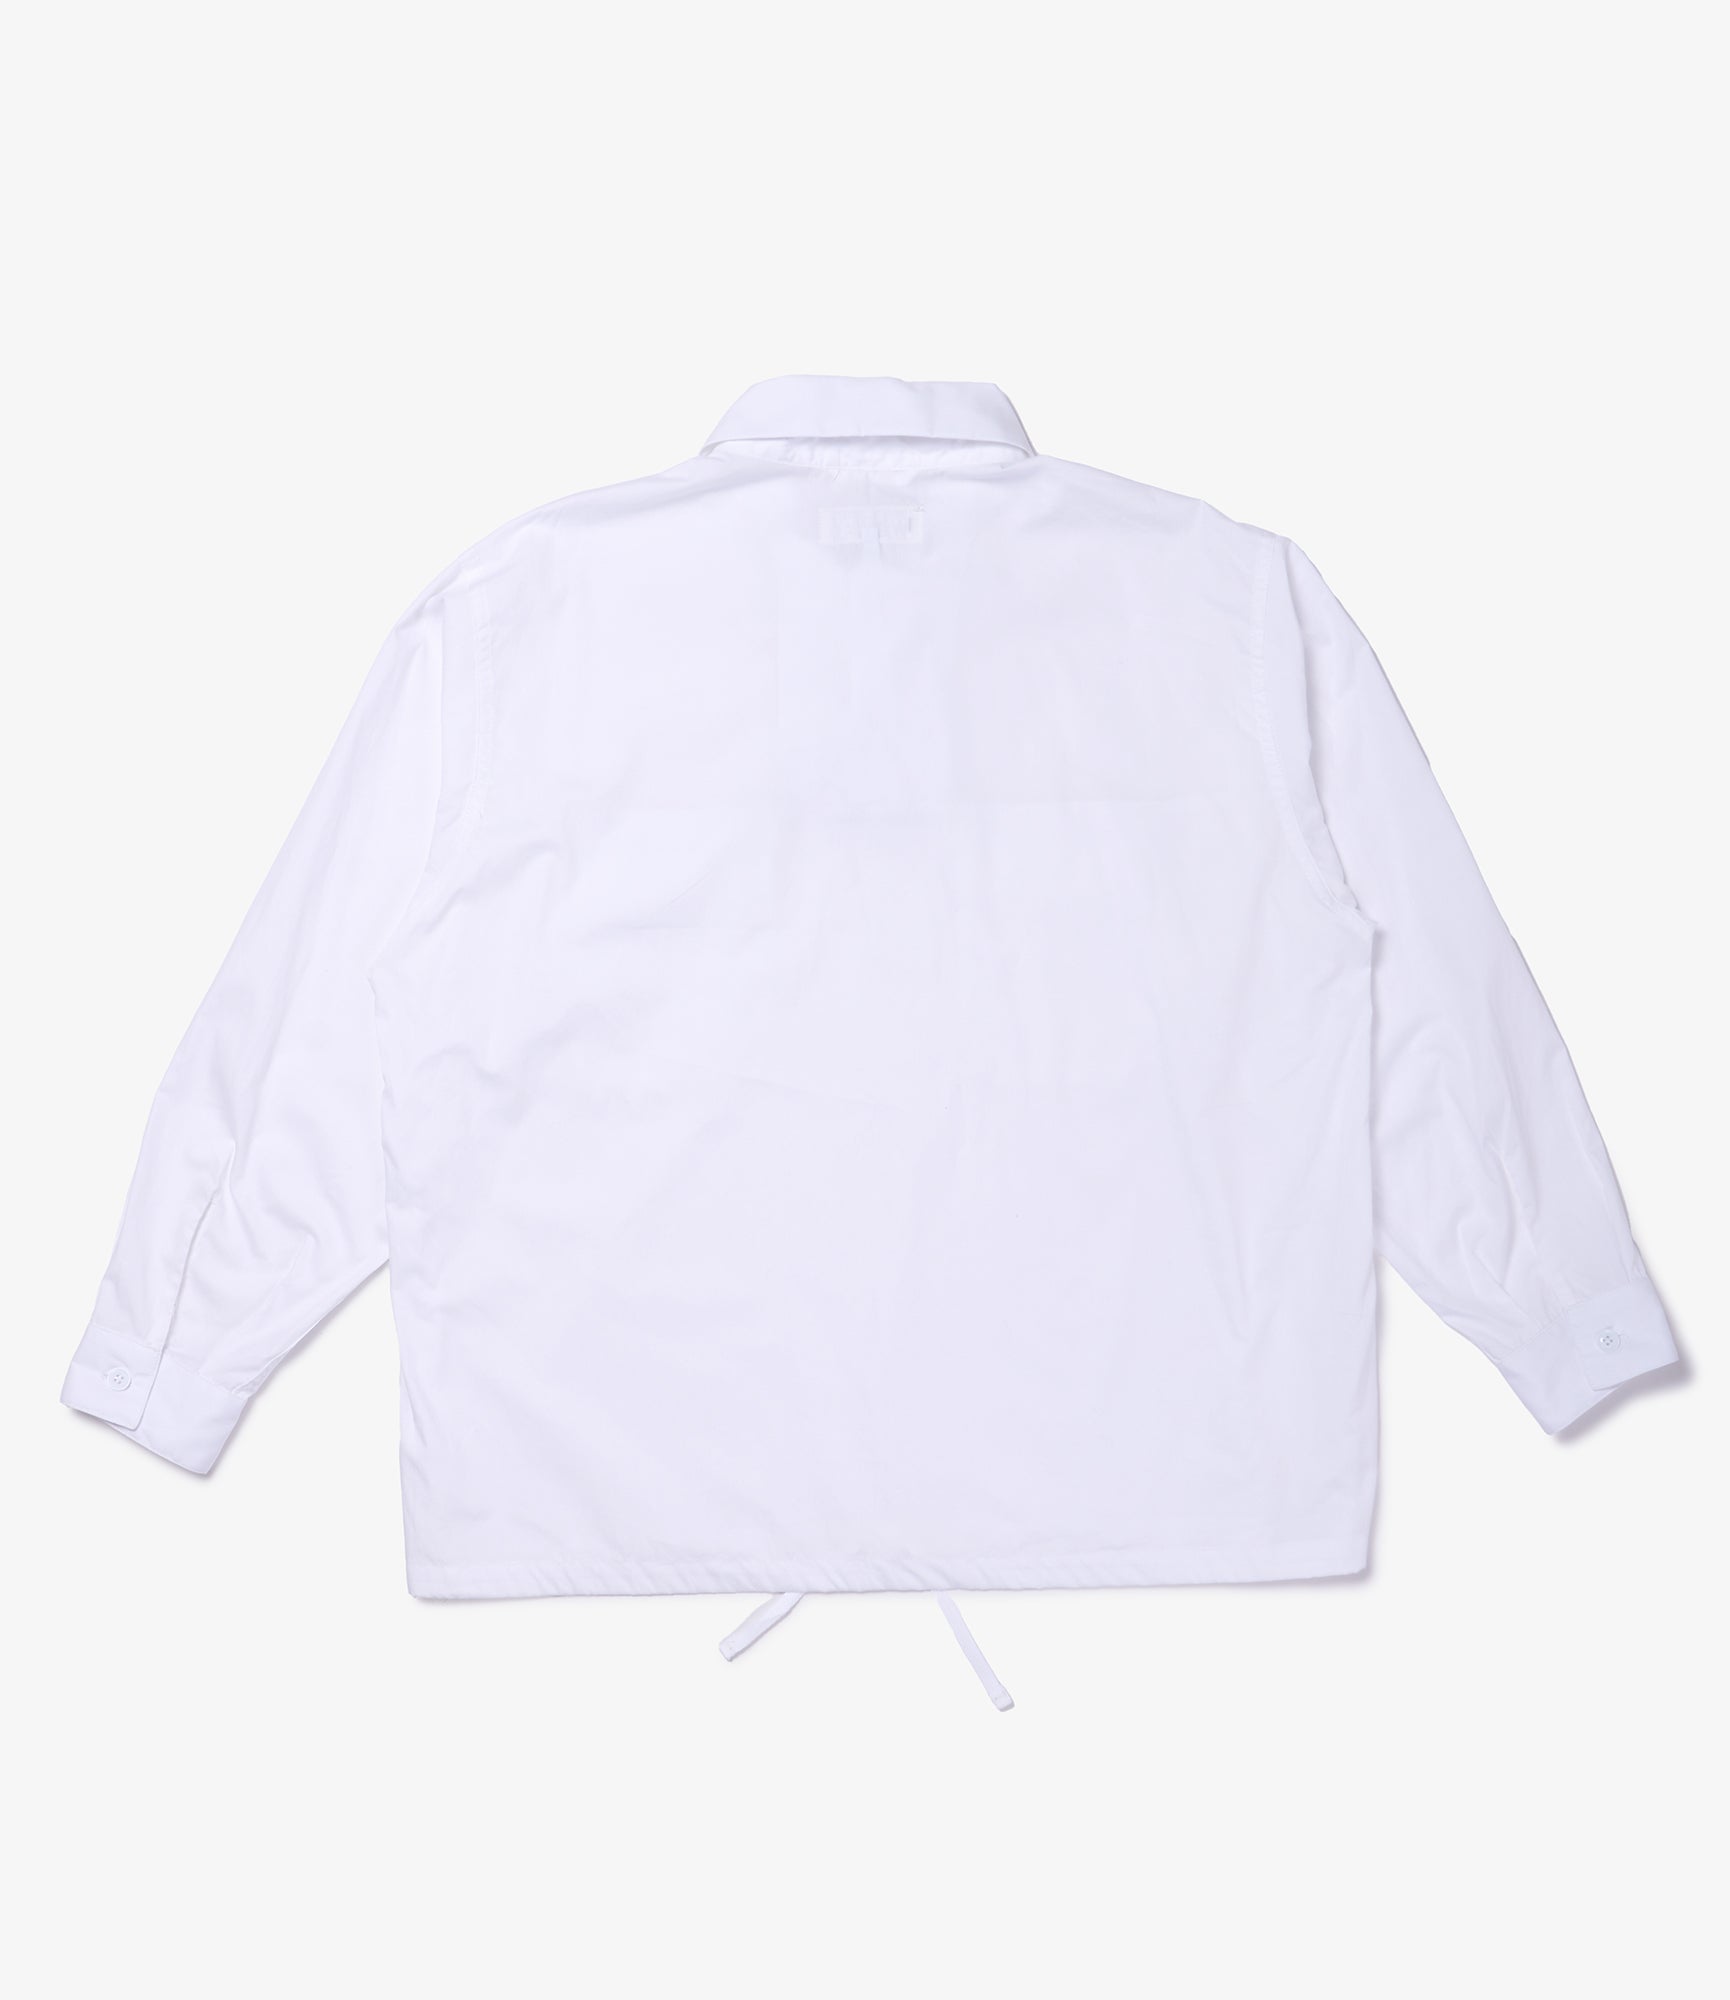 Jumper Shirt - White Superfine Poplin